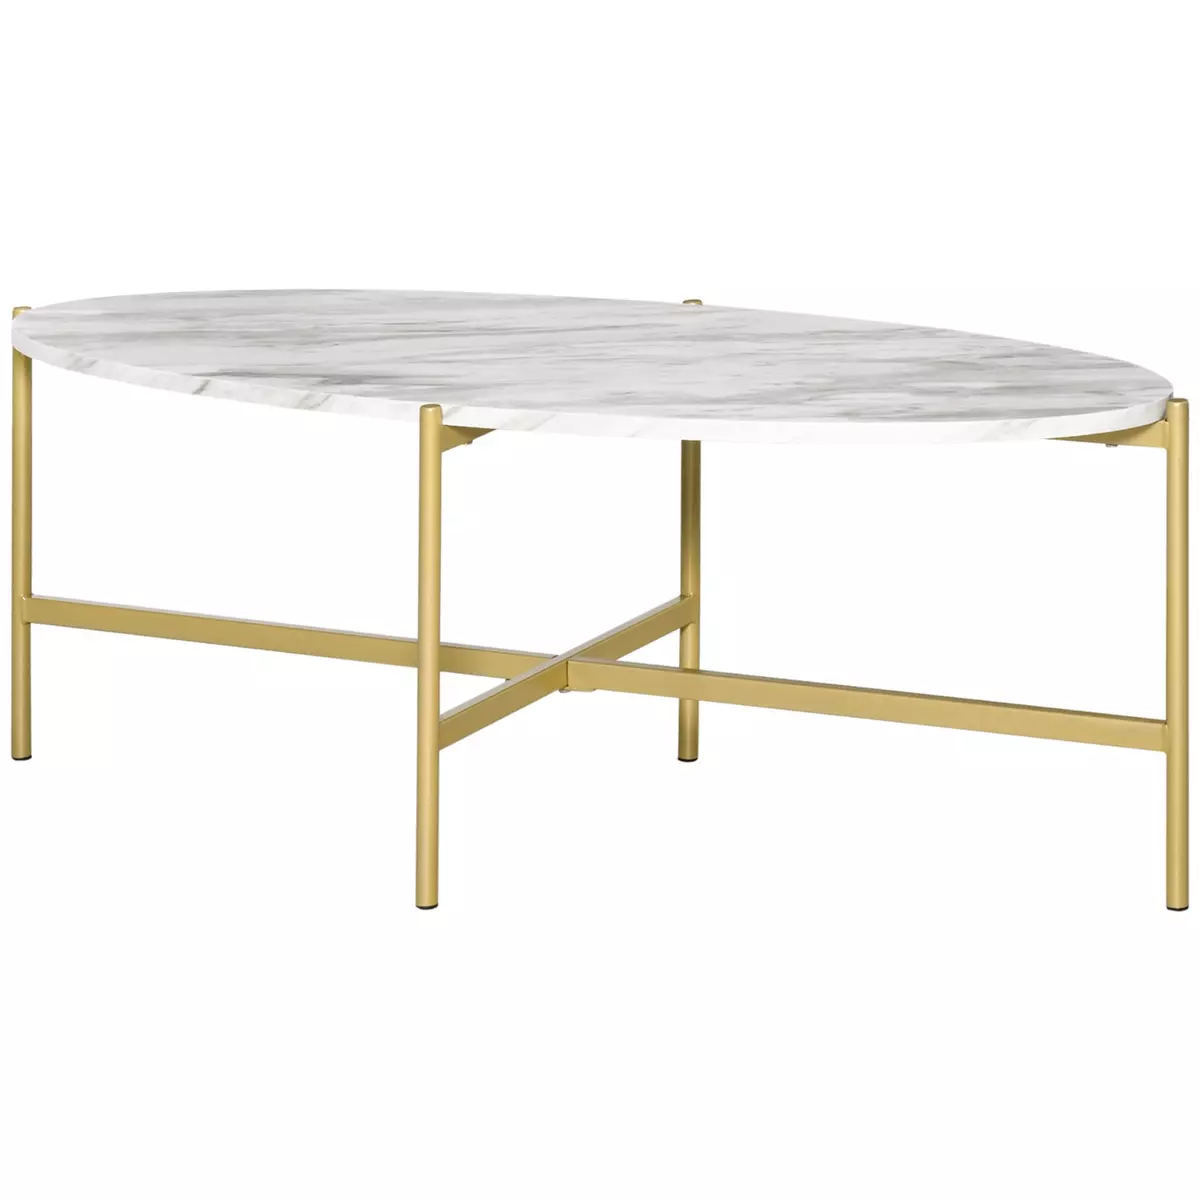 HOMCOM Table basse ovale design style art déco dim. 121L x 51l x 45H cm structure métal doré plateau aspect marbre blanc